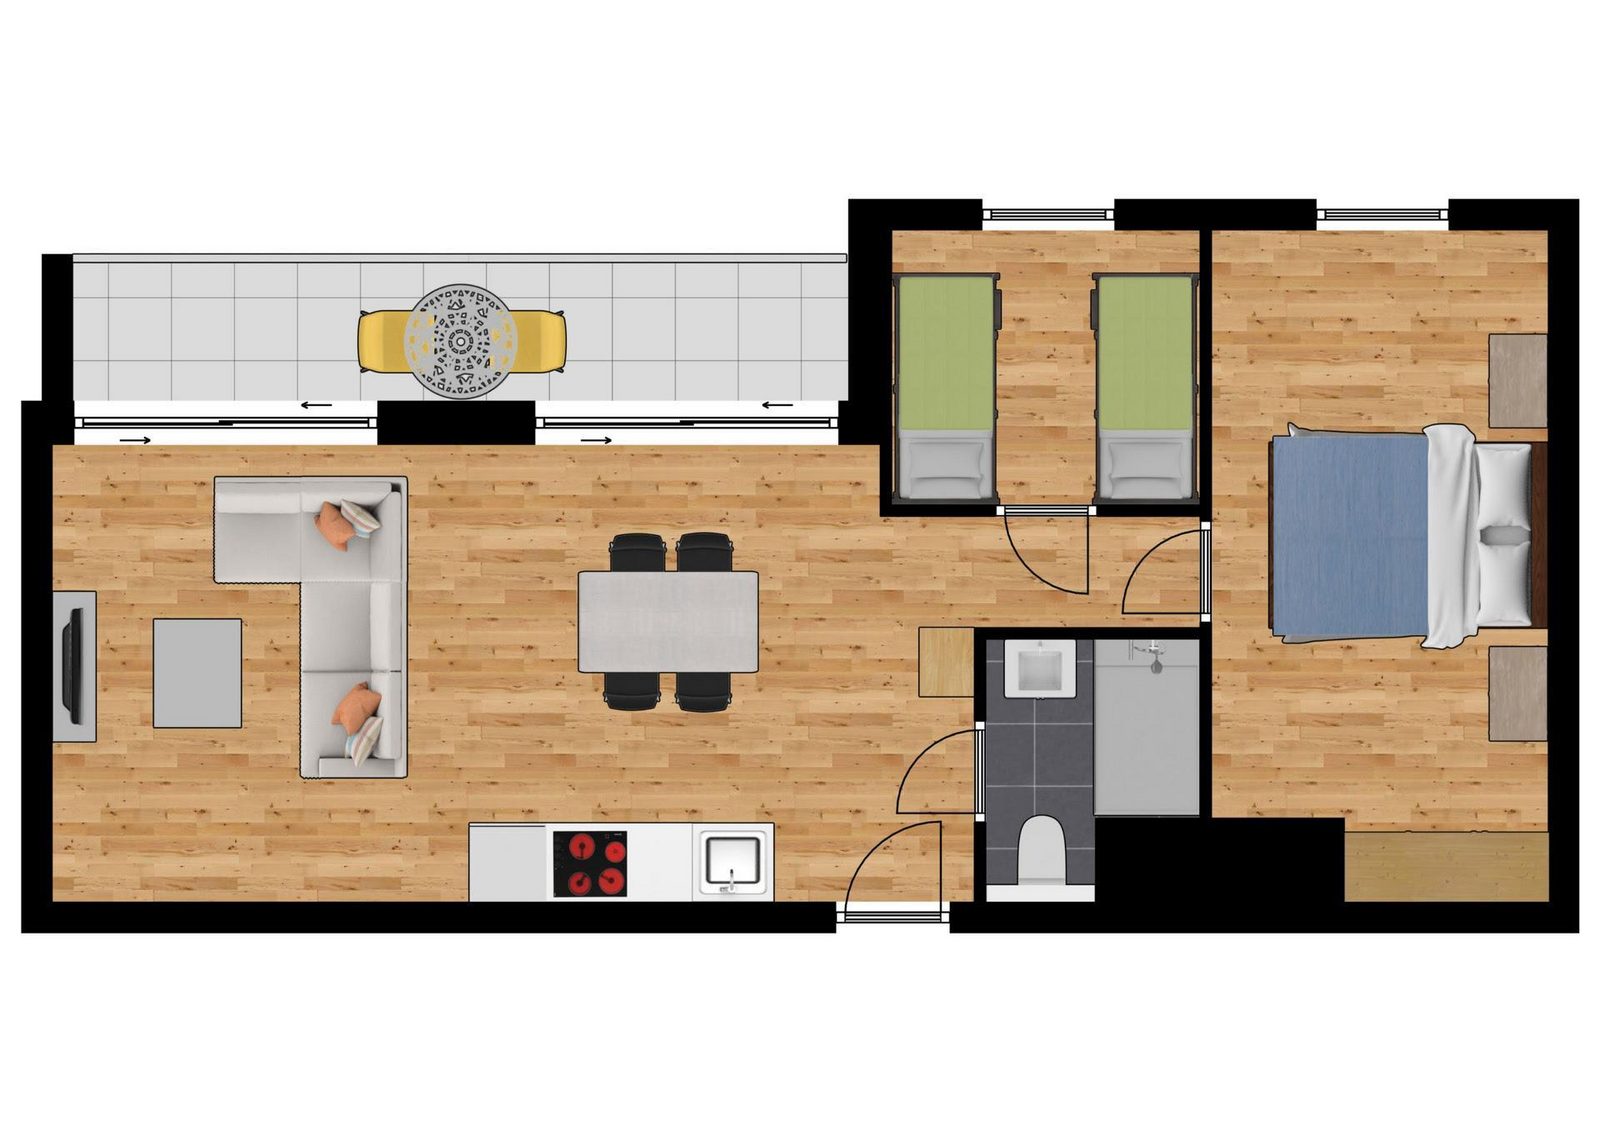 Comfort suite 4p balcony - 2 bedrooms - 1 double bed - 2 single beds